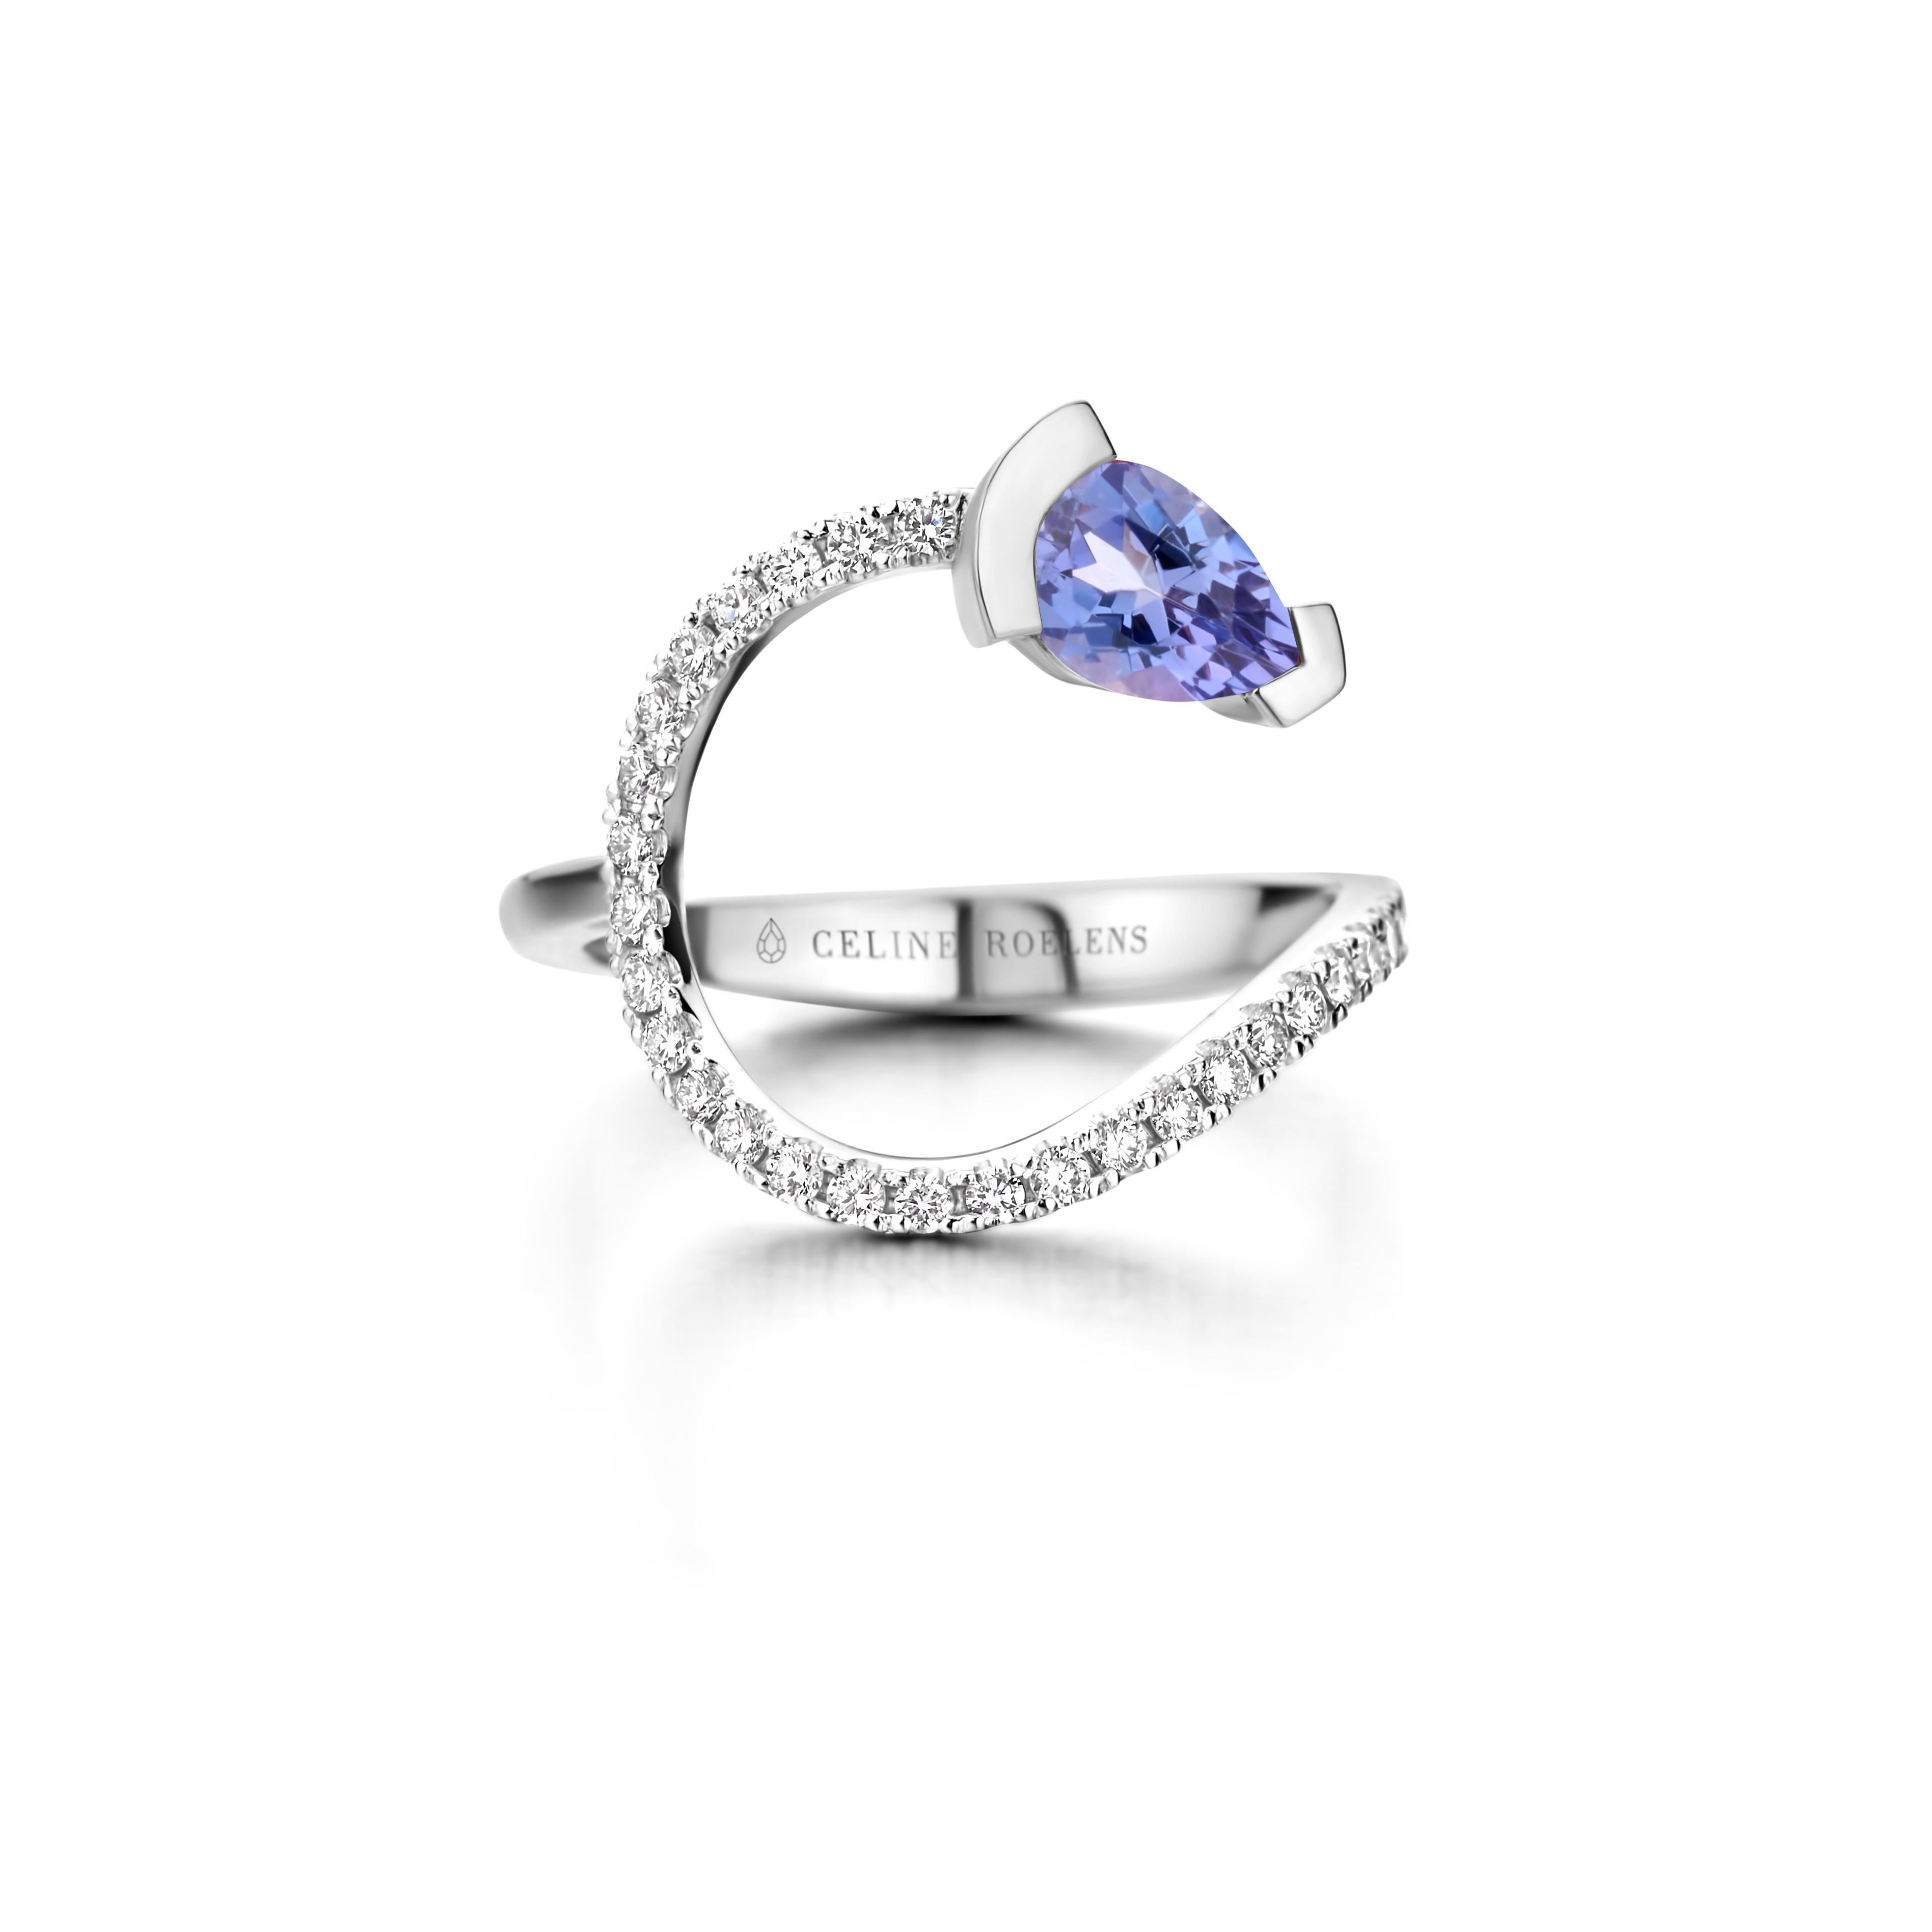 ADELINE geschwungener Ring aus 18 Kt Roségold, besetzt mit einem birnenförmigen Tansanit und 0,33 Karat Diamanten mit weißem Brillantschliff - Qualität VS F.